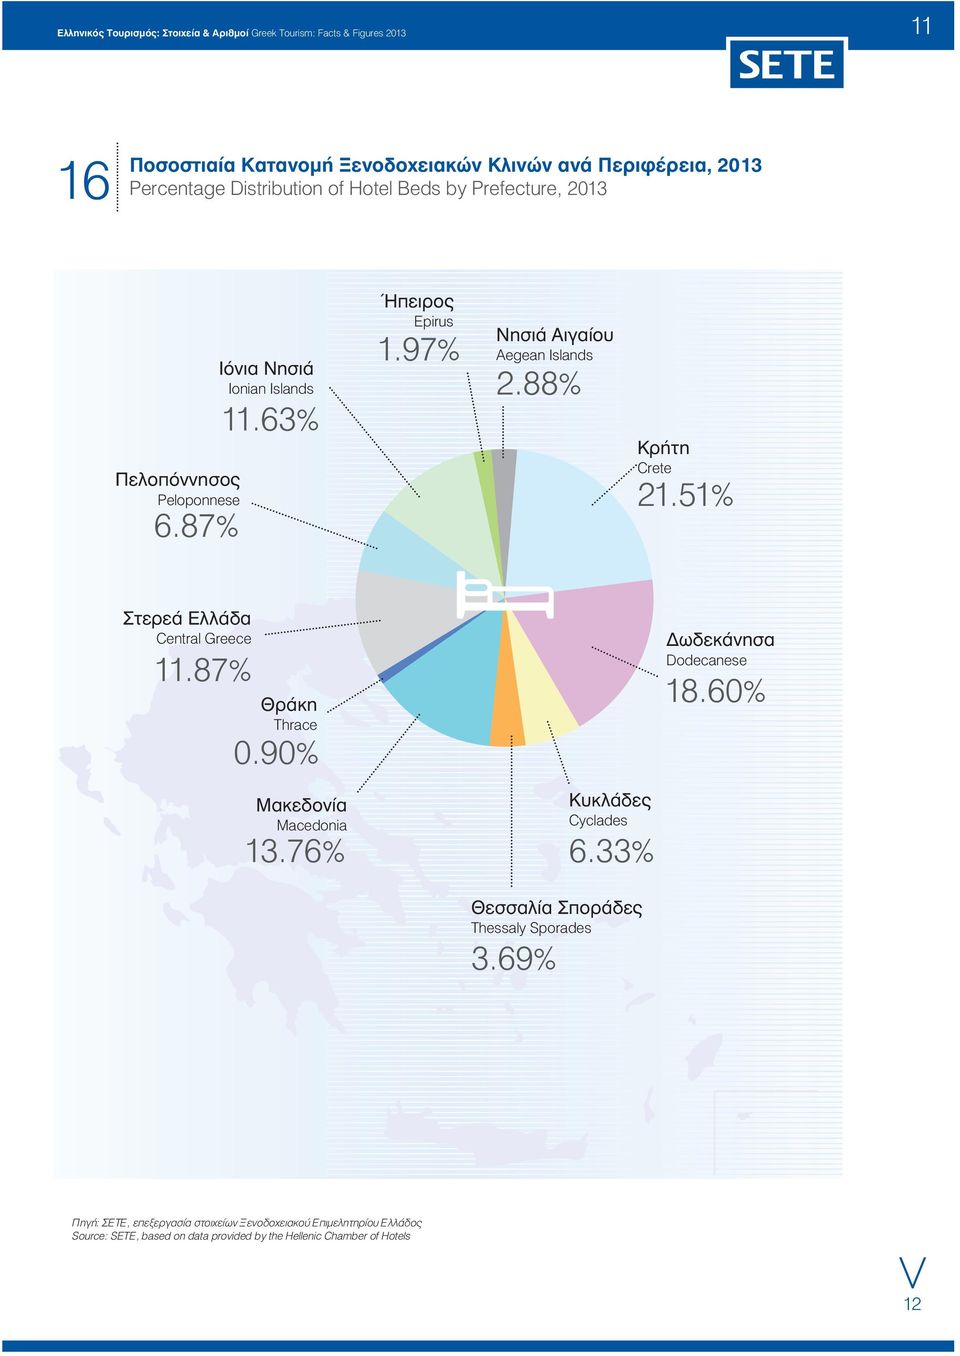 51% Στερεά Ελλάδα Central Greece 11.87% Θράκη Thrace 0.90% Δωδεκάνησα Dodecanese 18.60% Μακεδονία Macedonia 13.76% Κυκλάδες Cyclades 6.